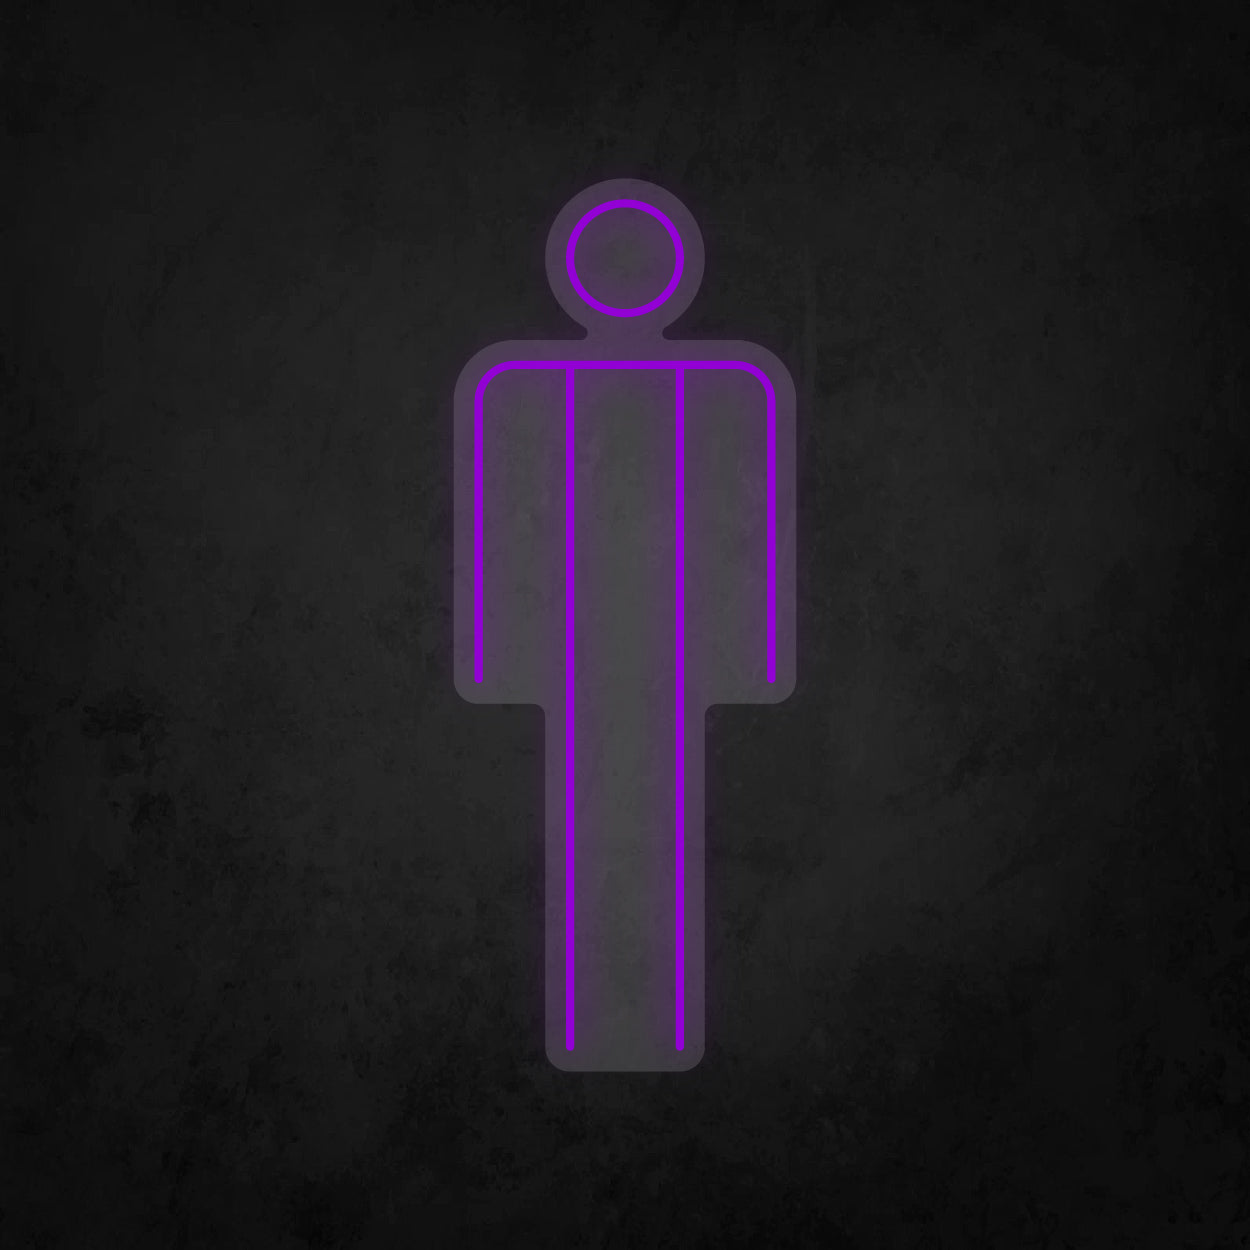 LED Neon Sign - Men's Restroom - Large